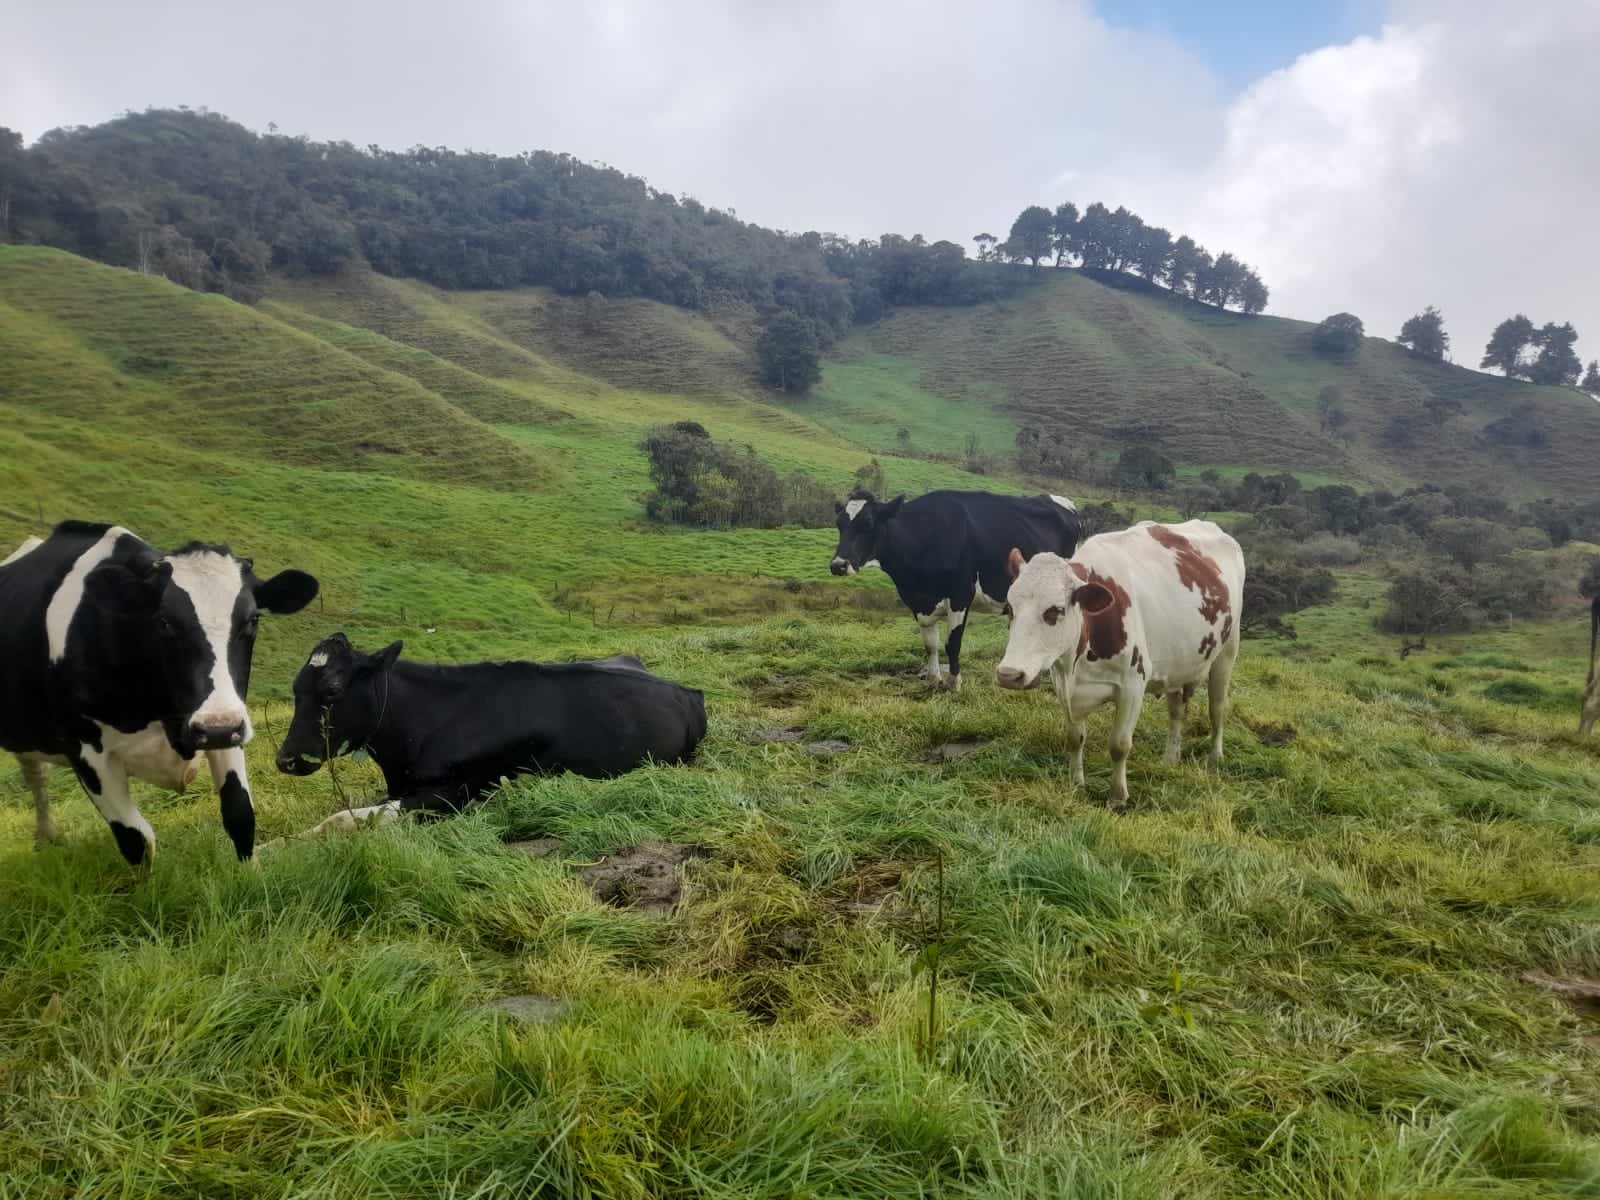 39.53 Acre Productive Milk Farm In Girardota 45 Minutes From El Poblado